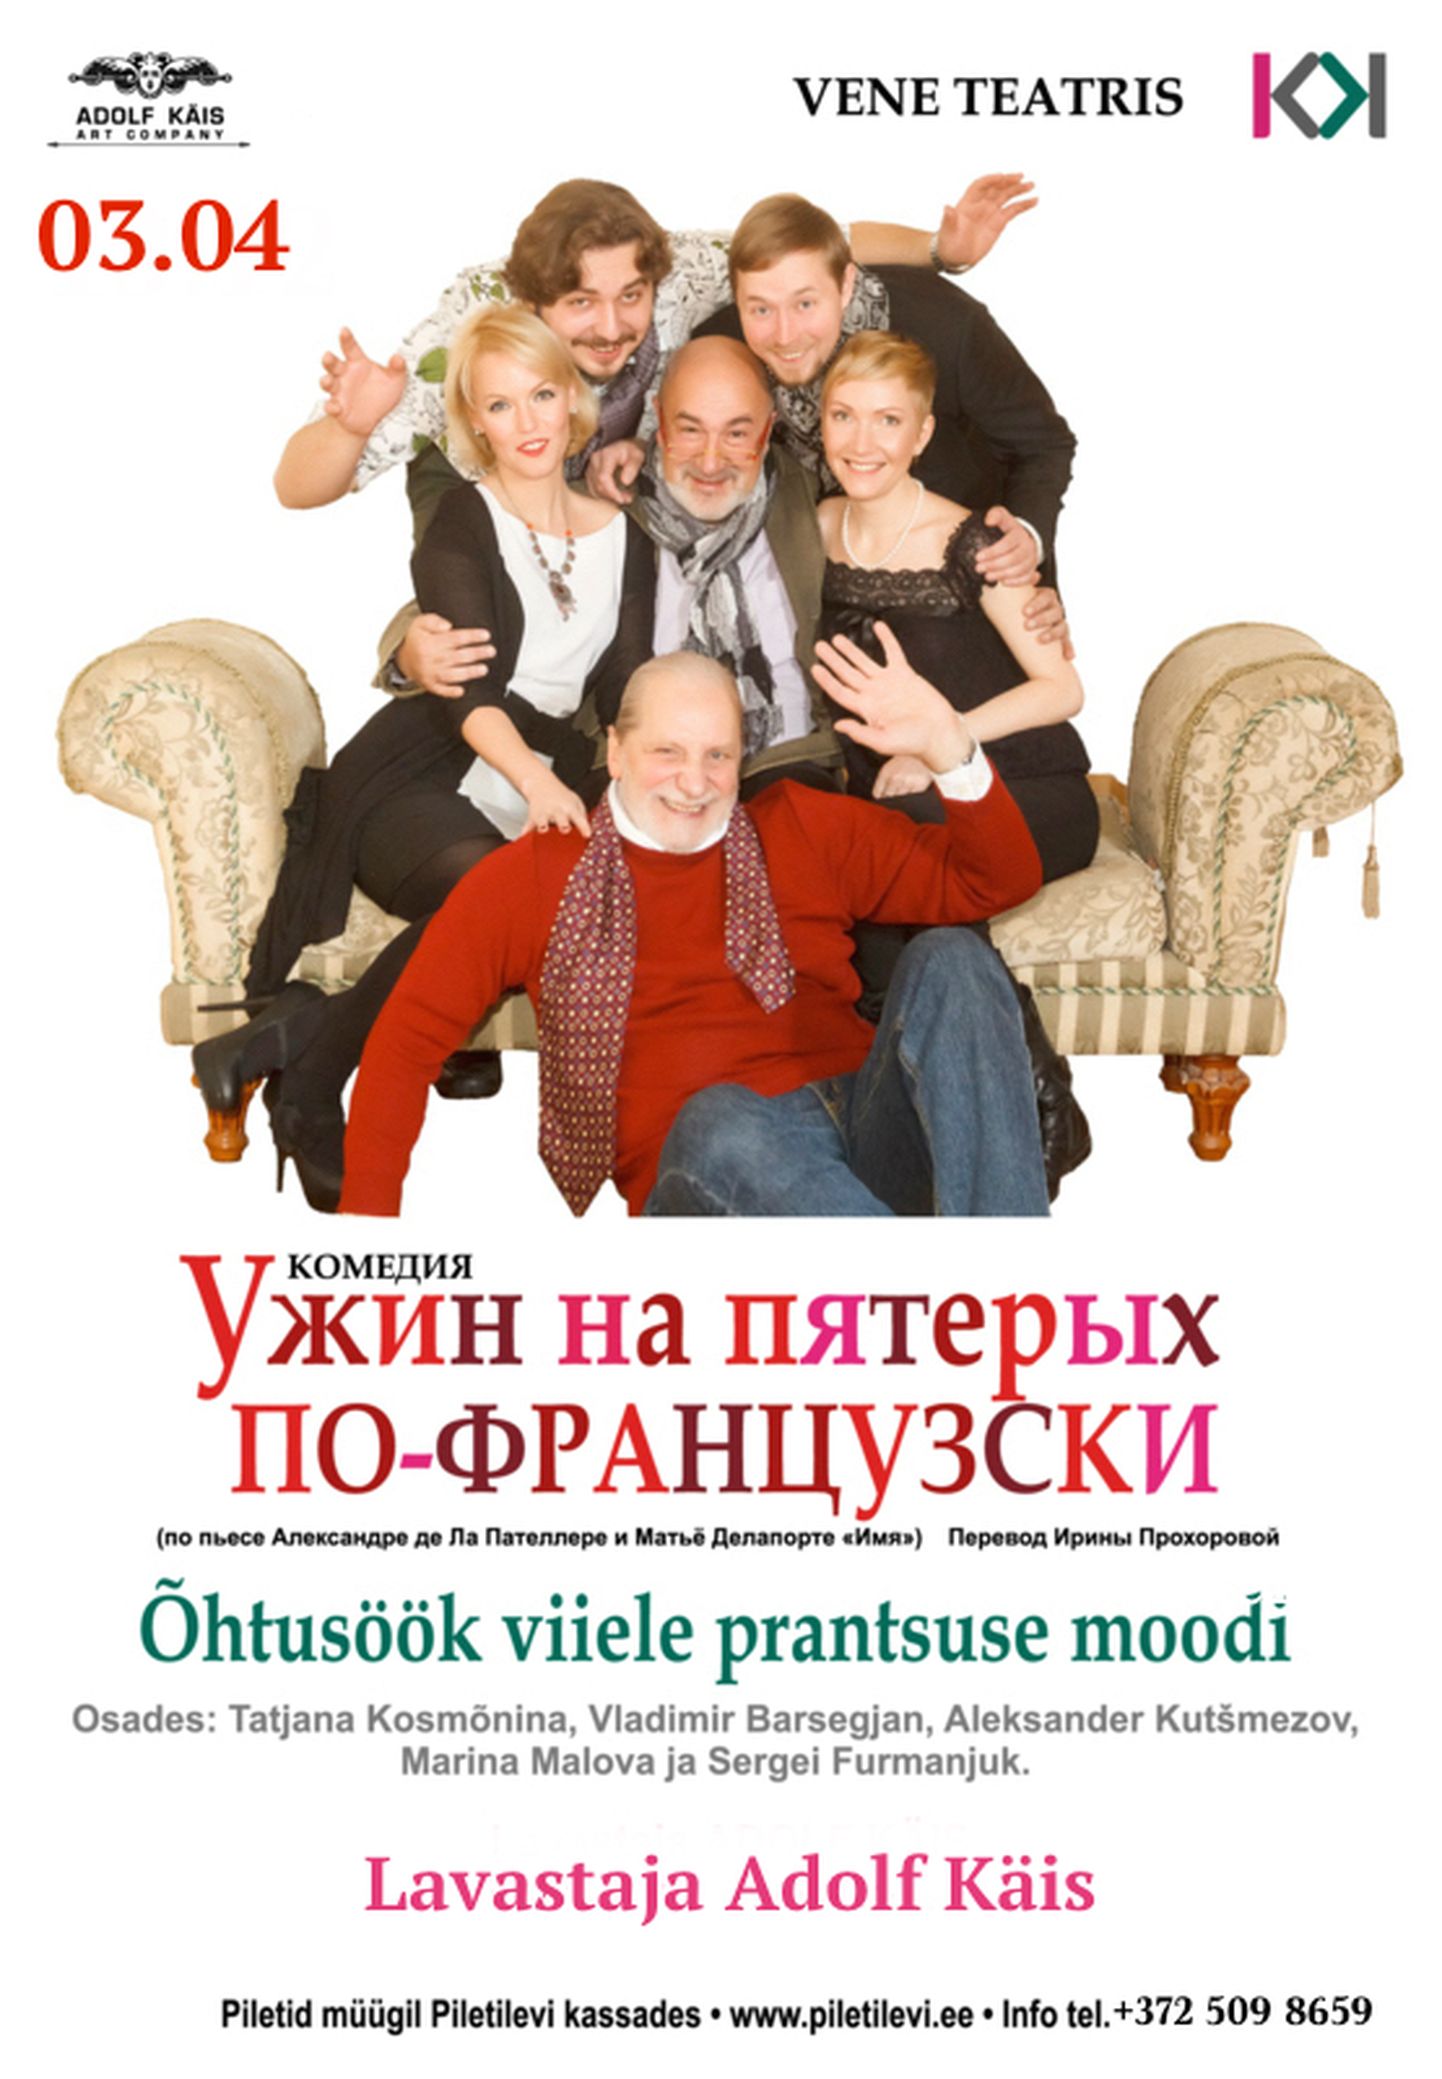 В Русском театре пройдет спектакль «Ужин на пятерых по-французски».